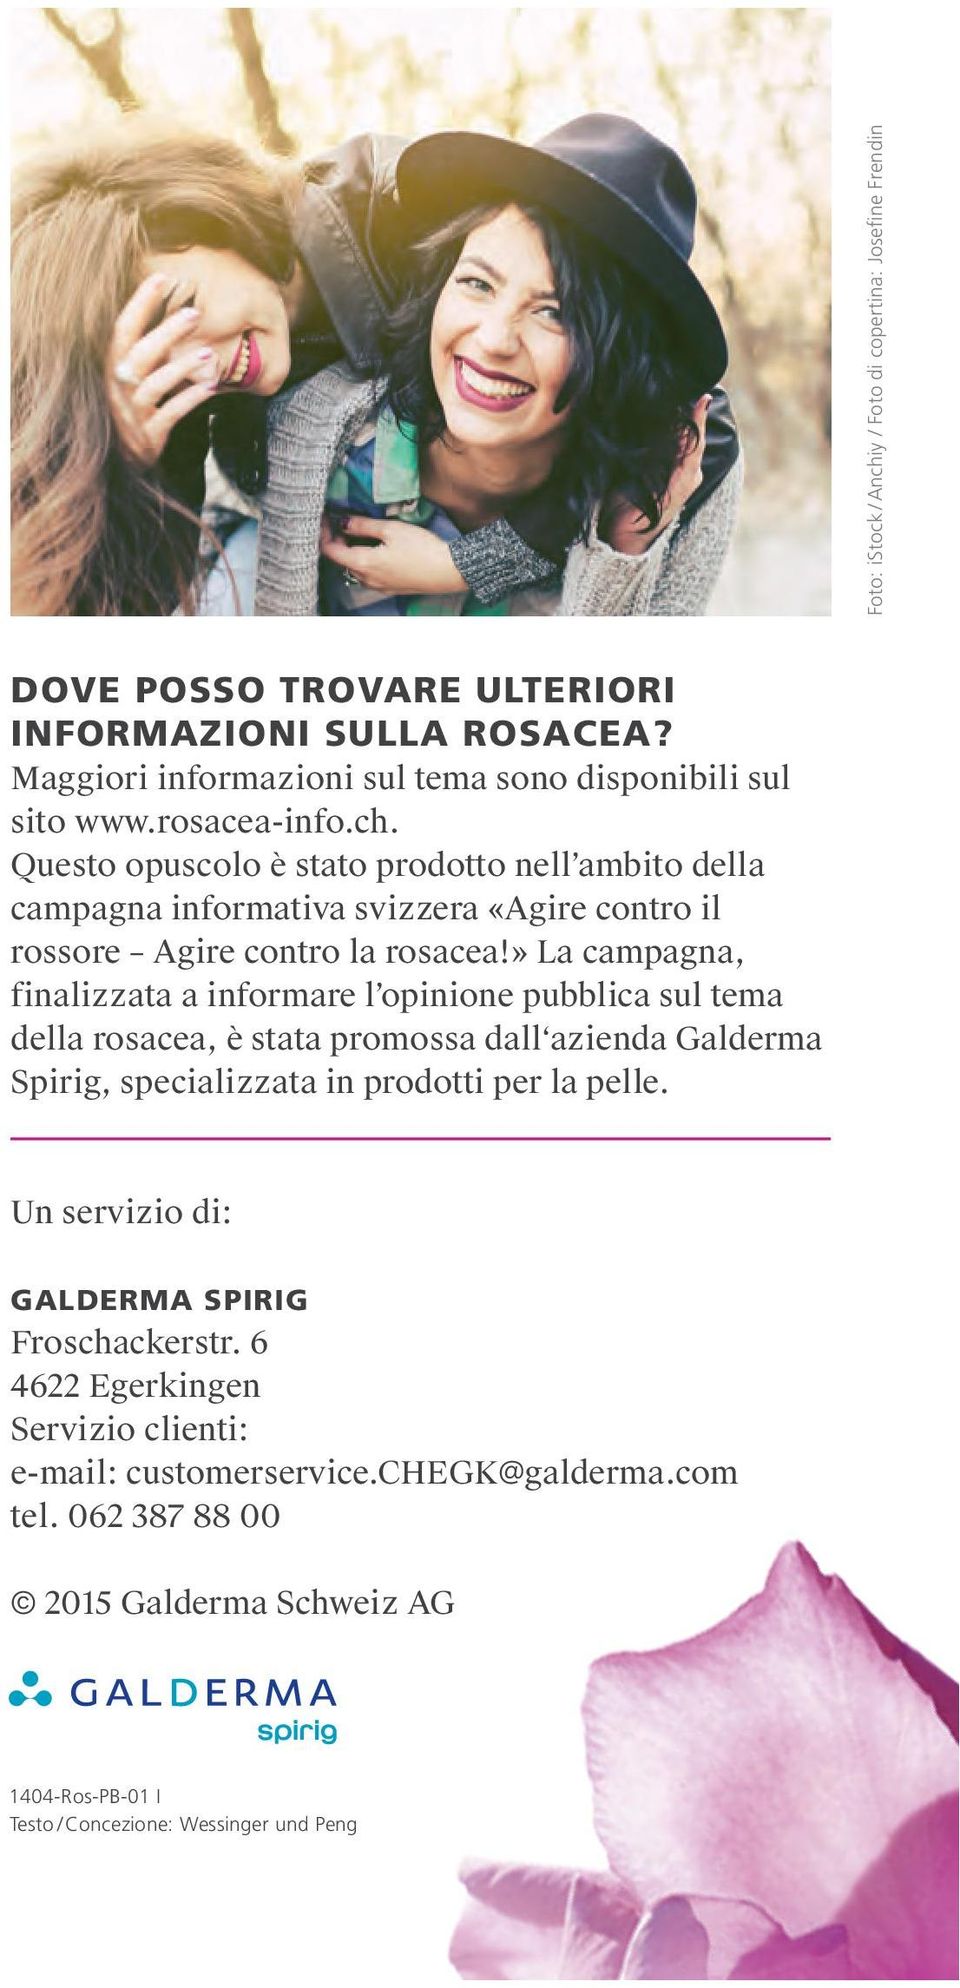 » La campagna, finalizzata a informare l opinione pubblica sul tema della rosacea, è stata promossa dall azienda Galderma Spirig, specializzata in prodotti per la pelle.